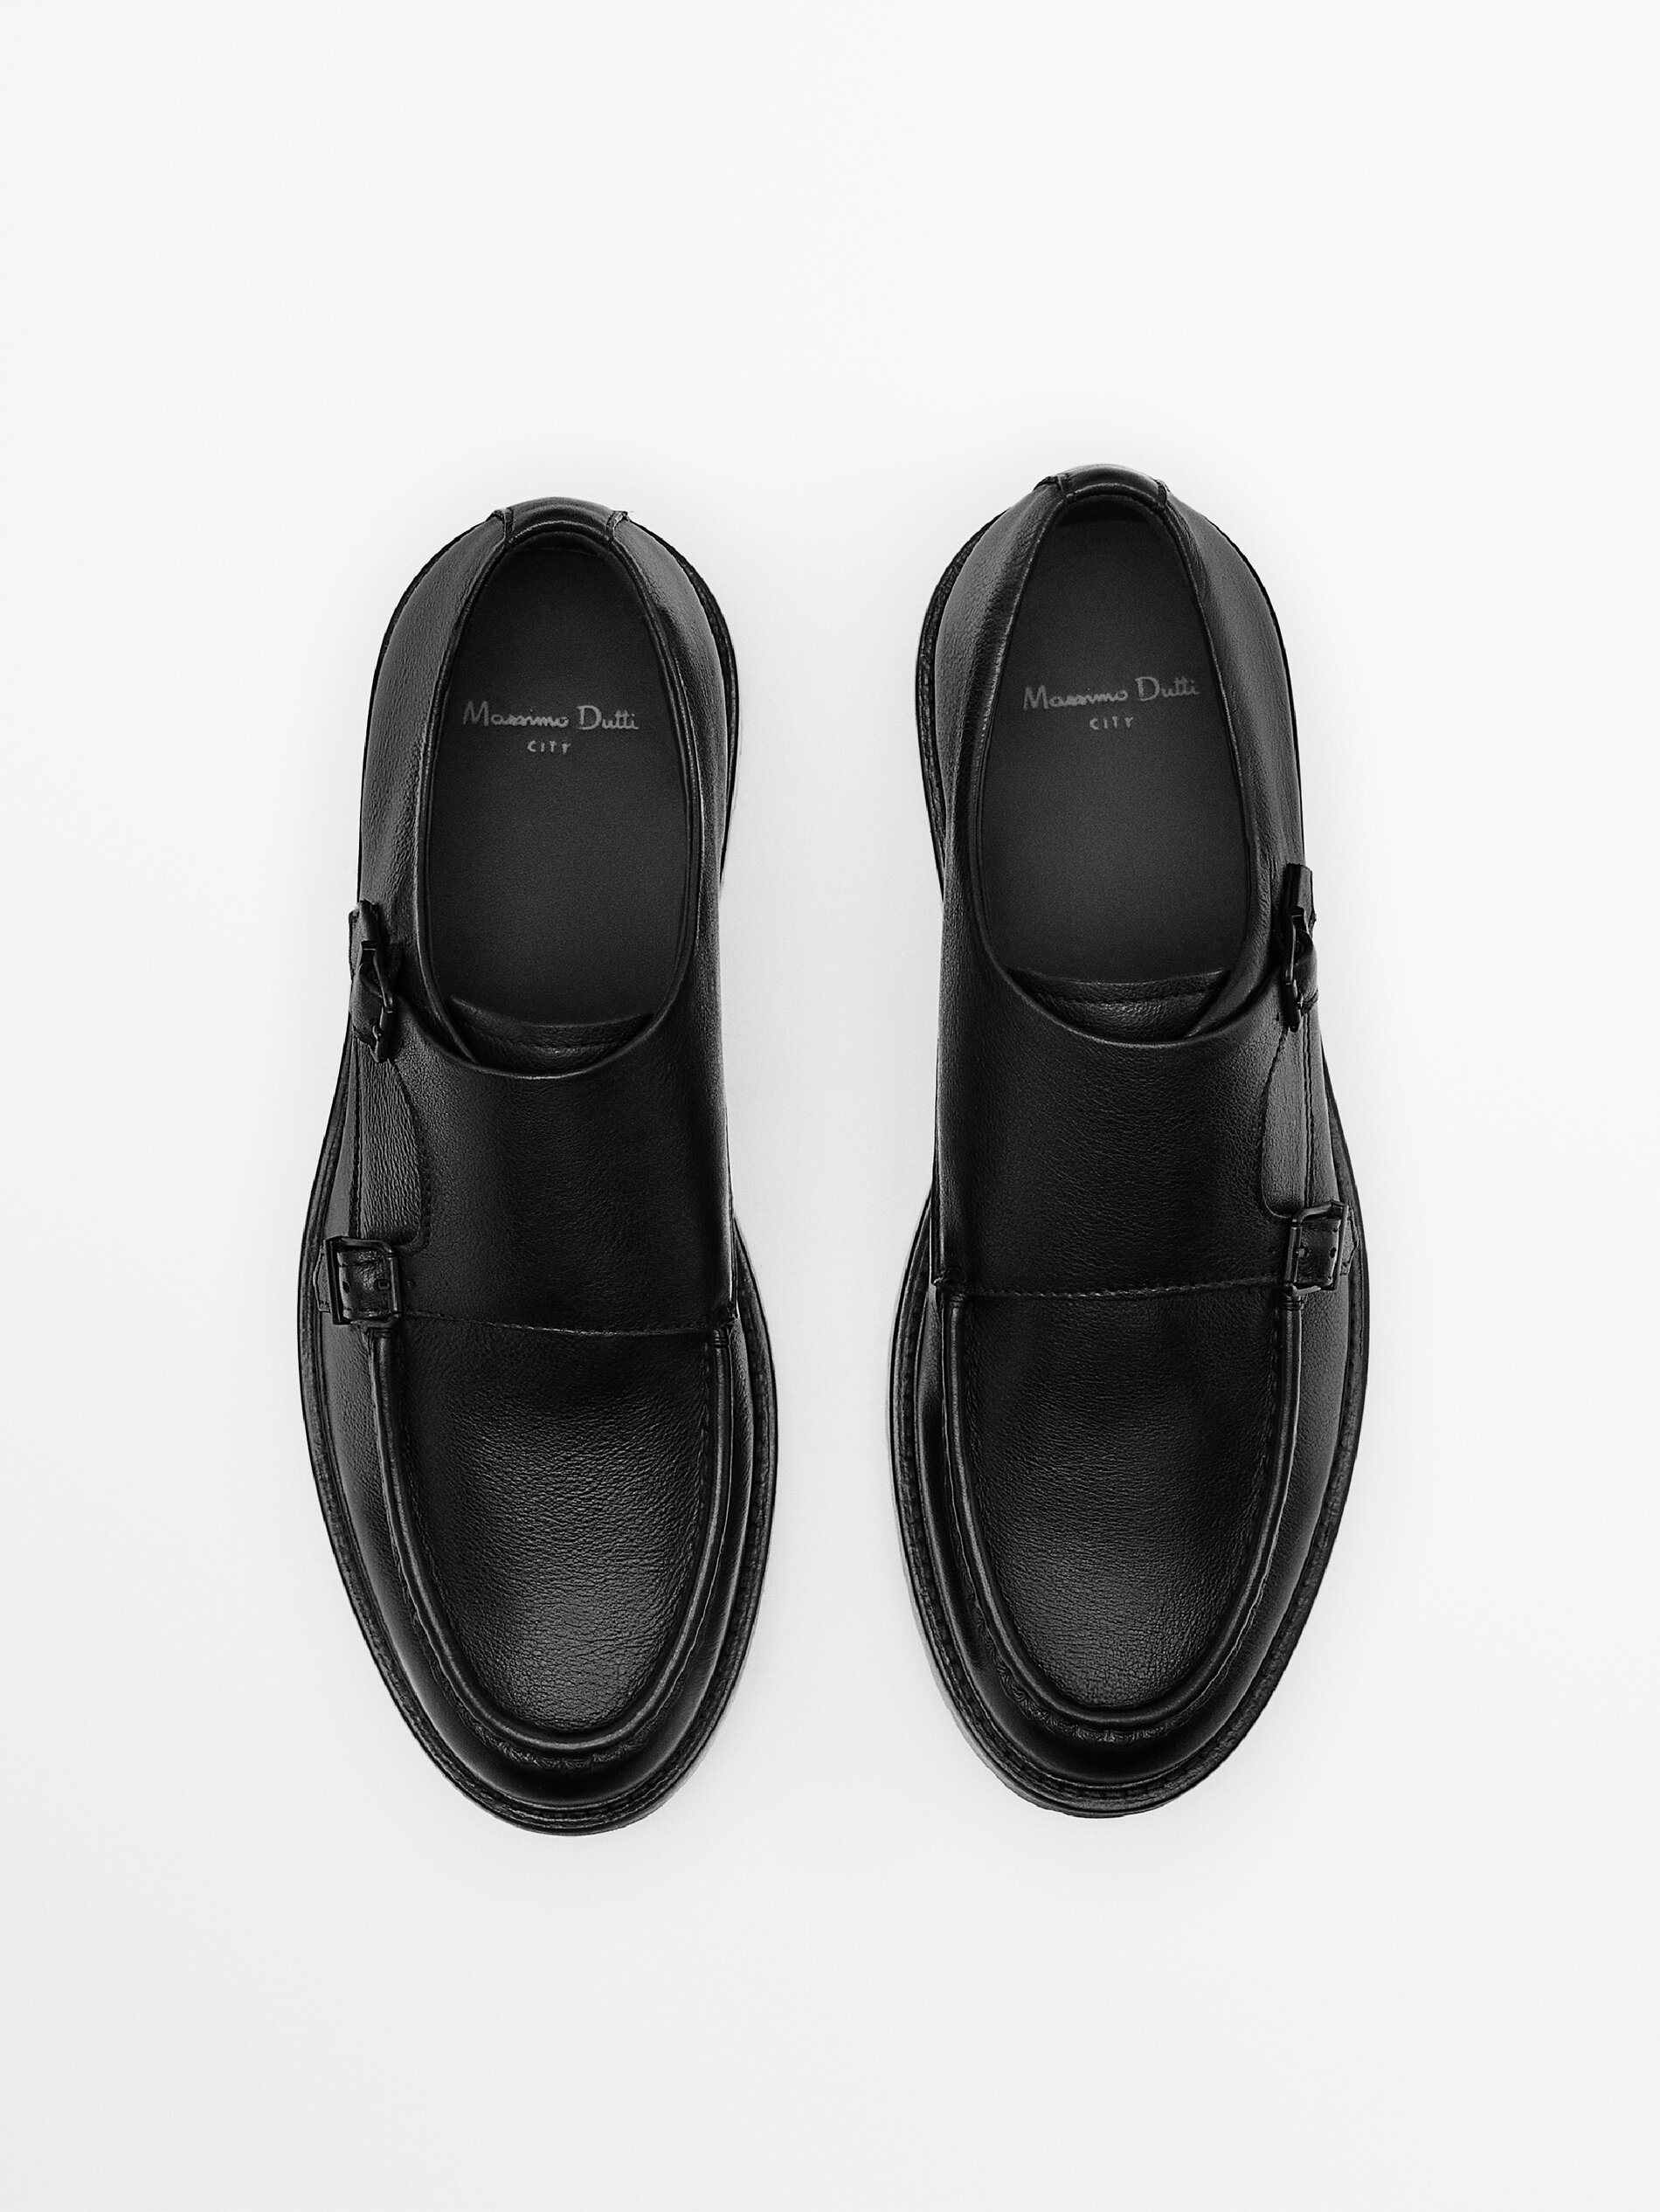 Massimo Dutti Nappa Leather Monk Shoes - Big Apple Buddy